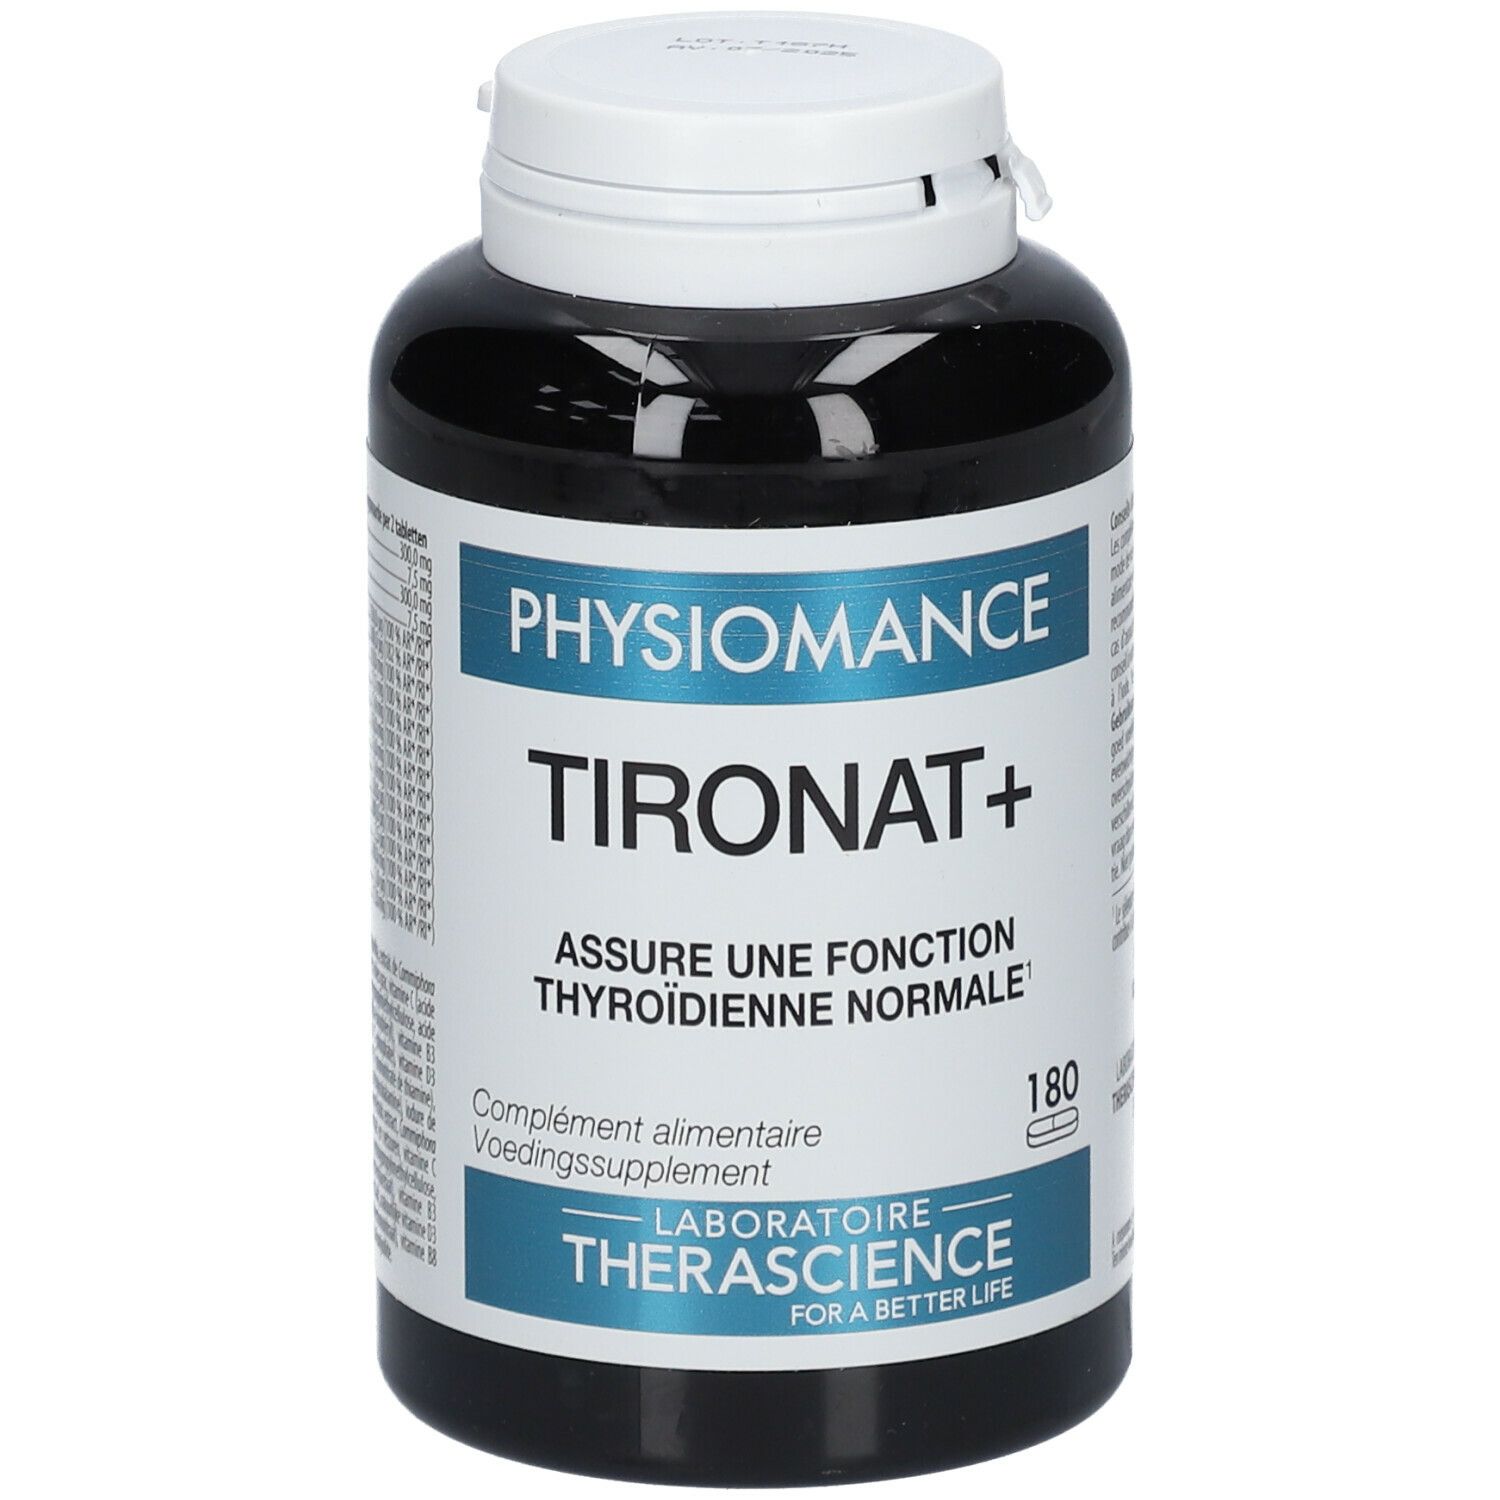 Therascience Physiomance Tironat+